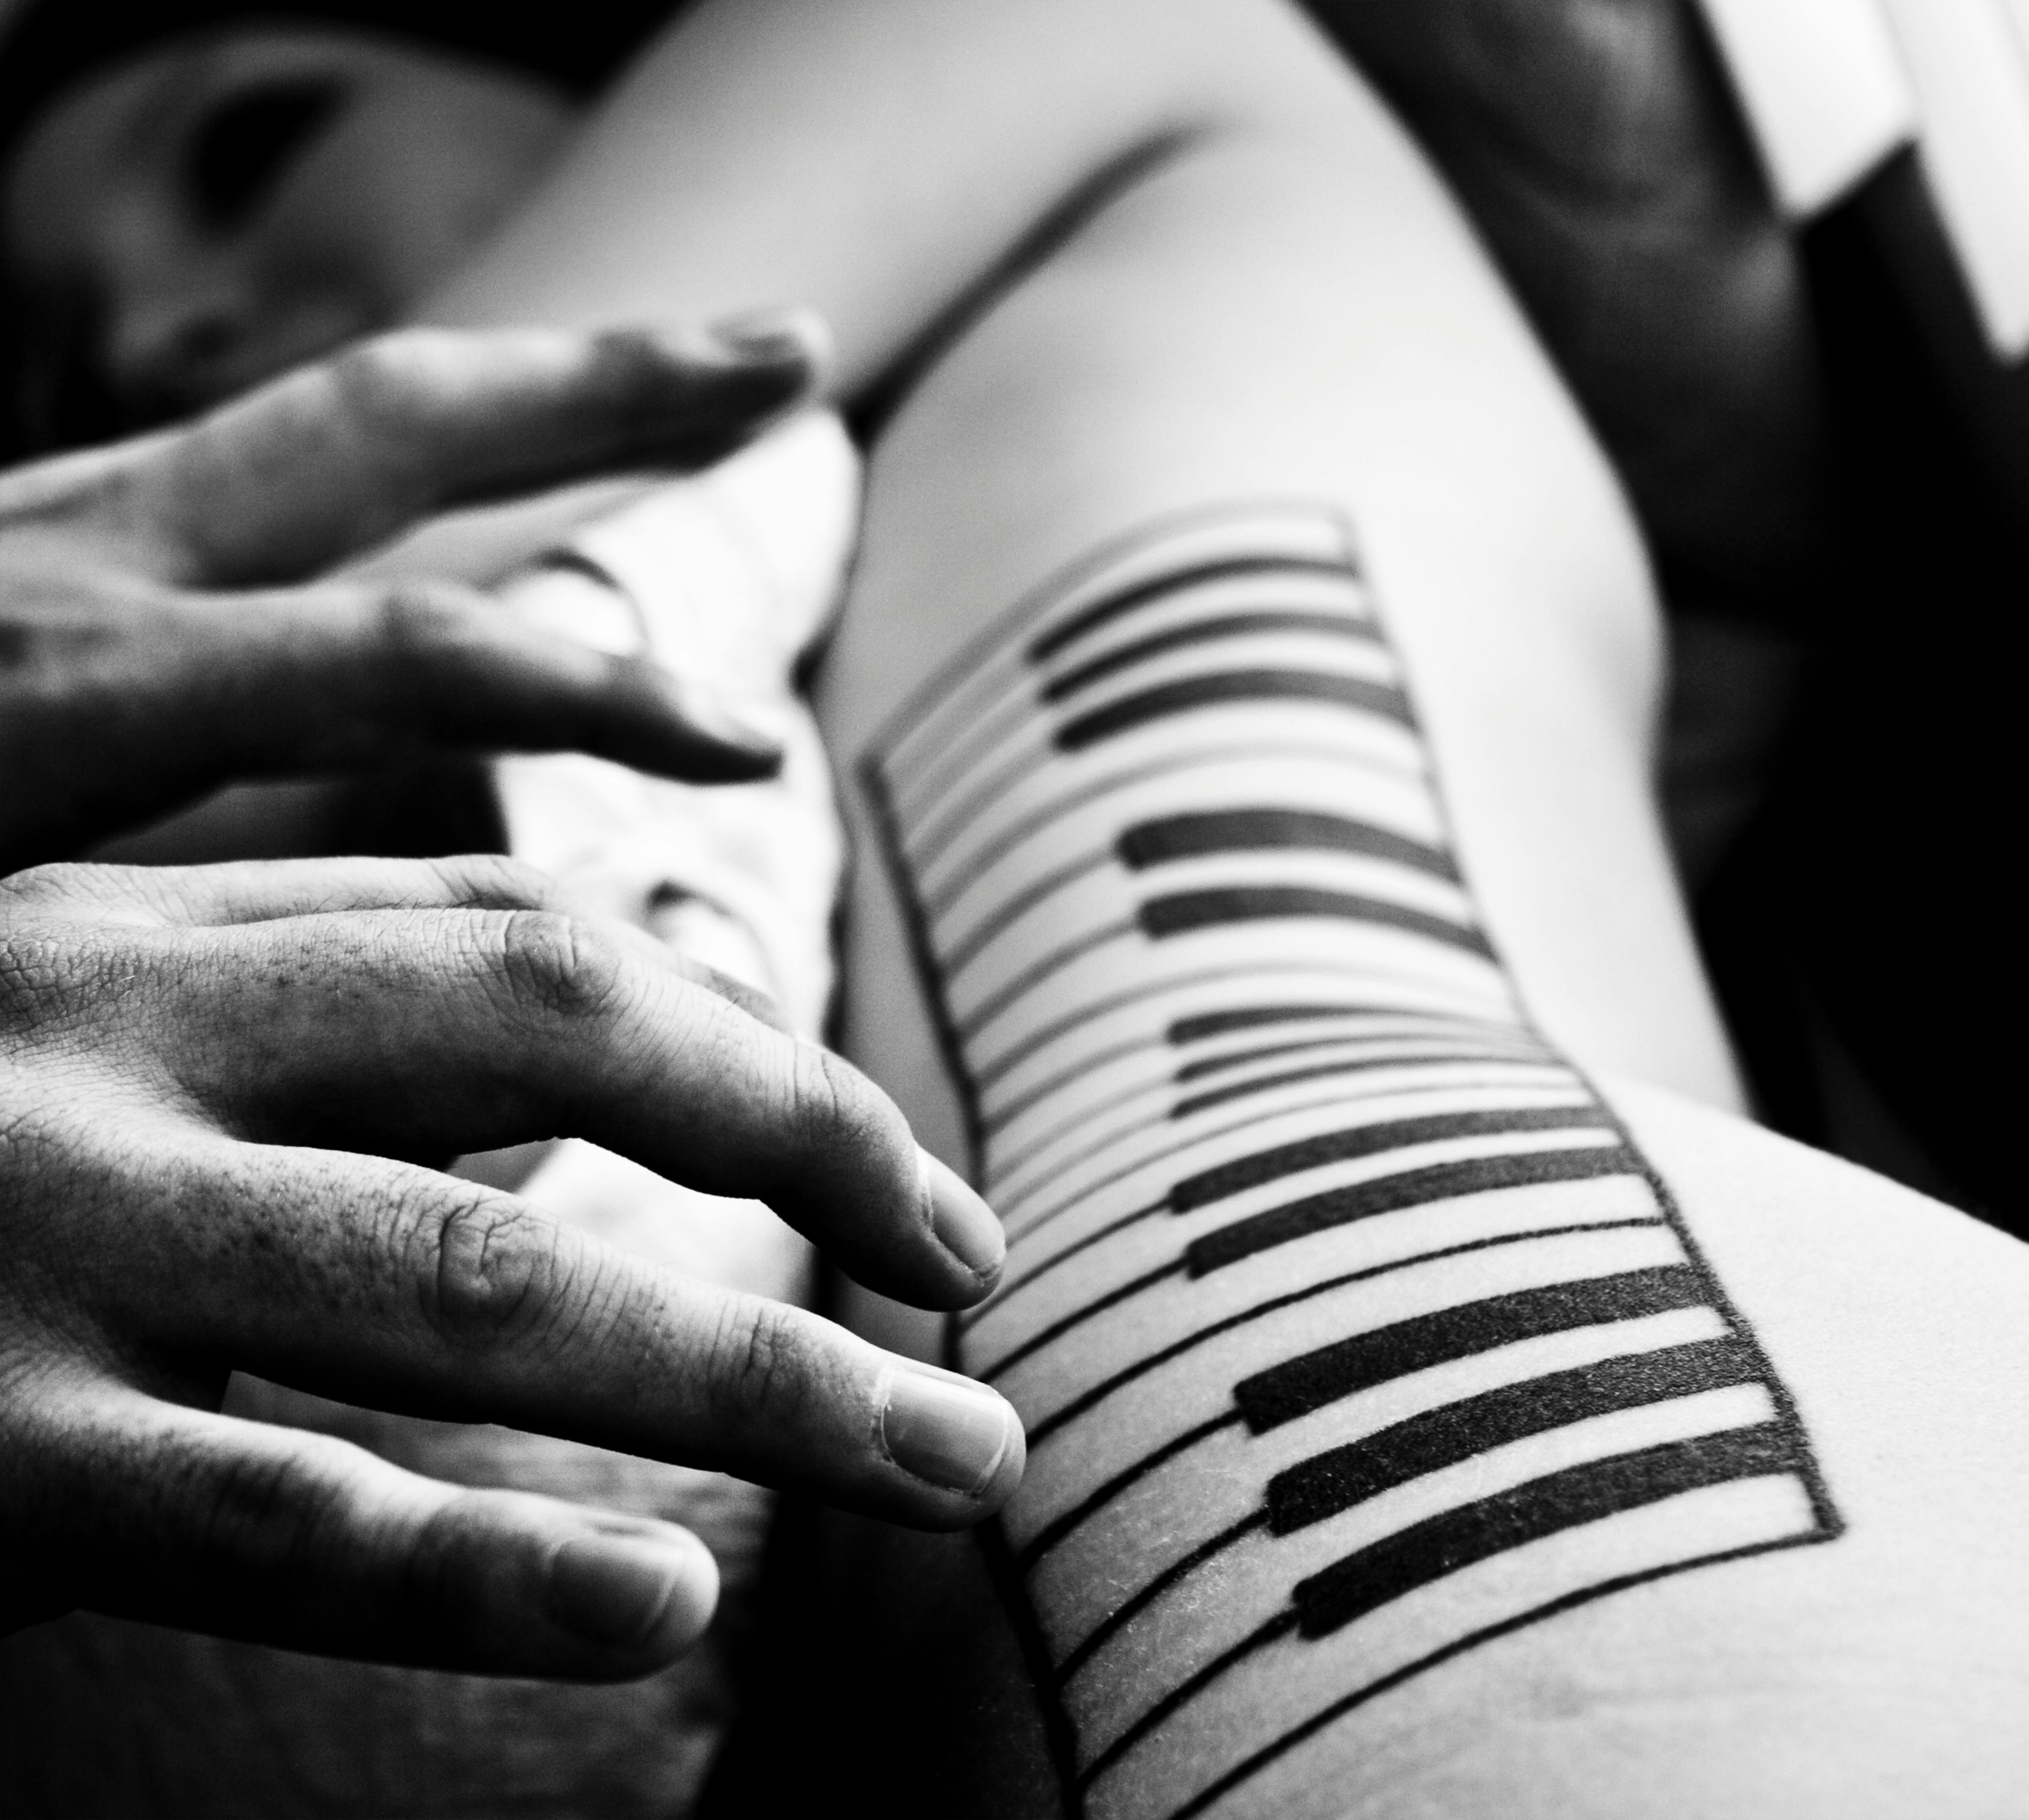 89 Elegant Piano Tattoos